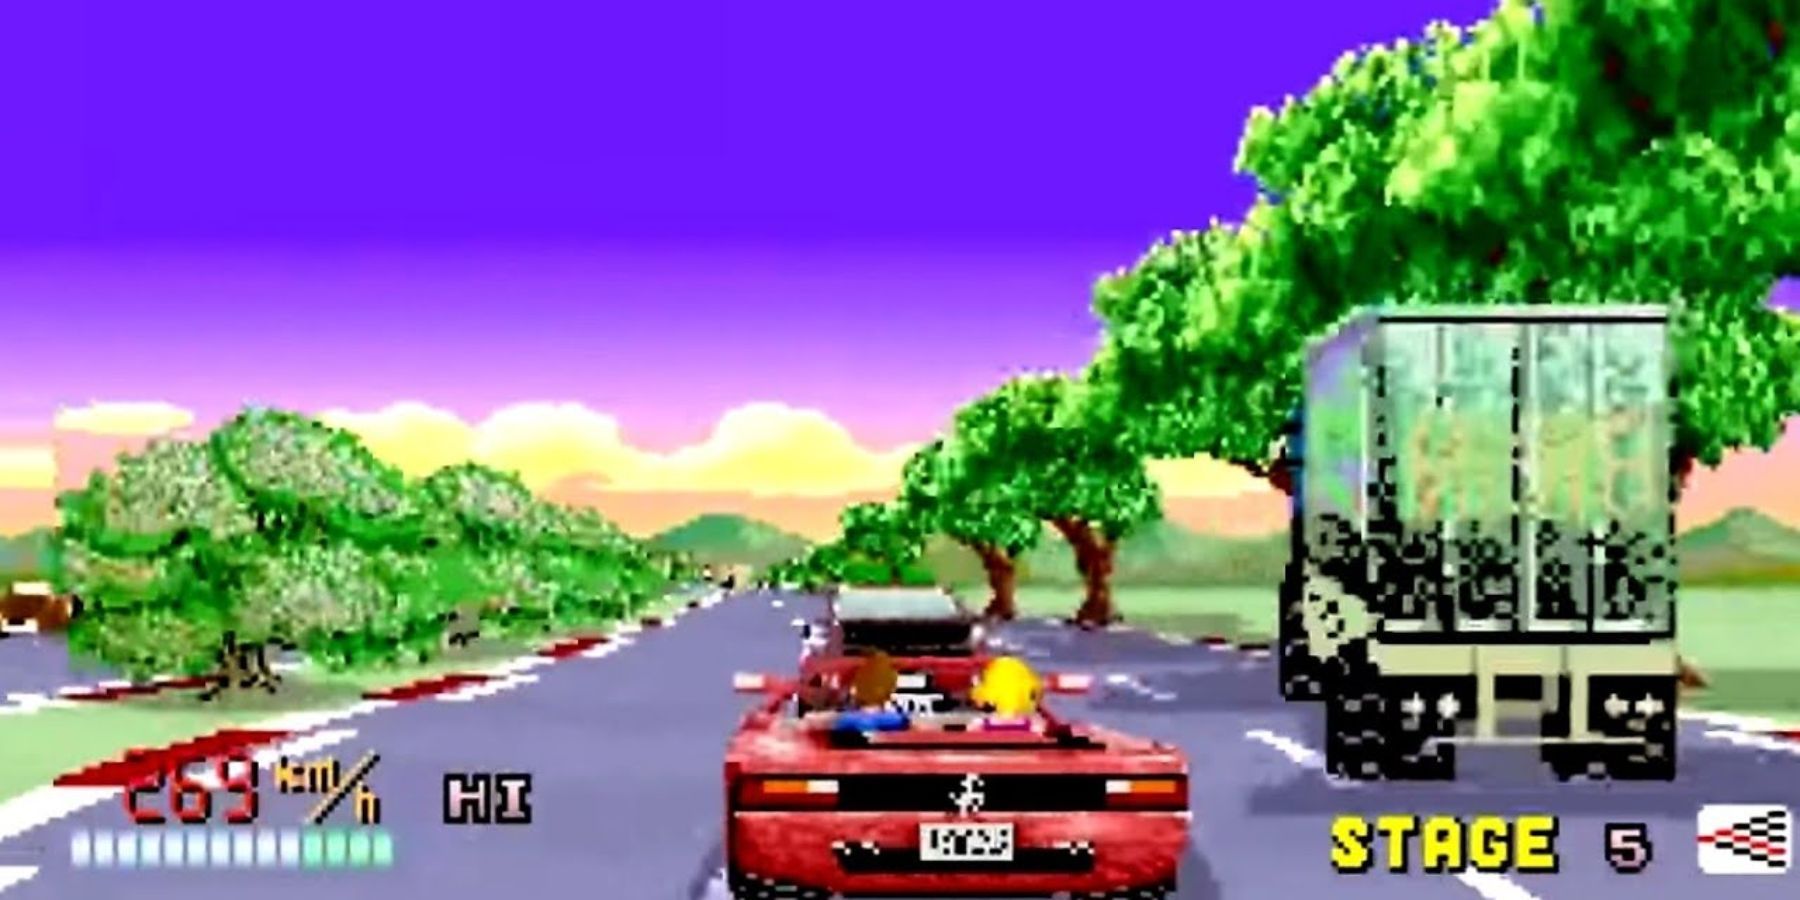 玩家控制的汽车在奔驰中驶过道路